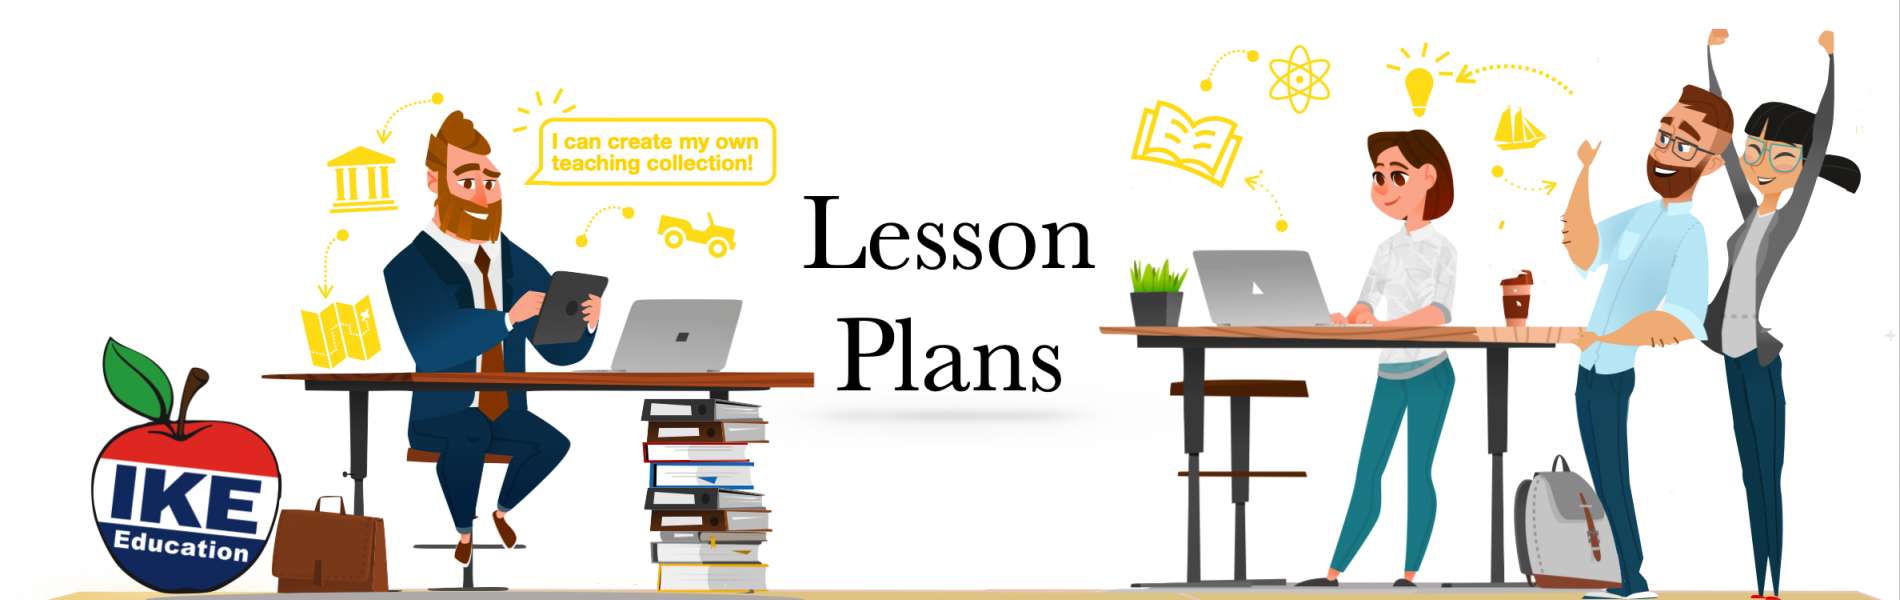 Lesson Plans banner